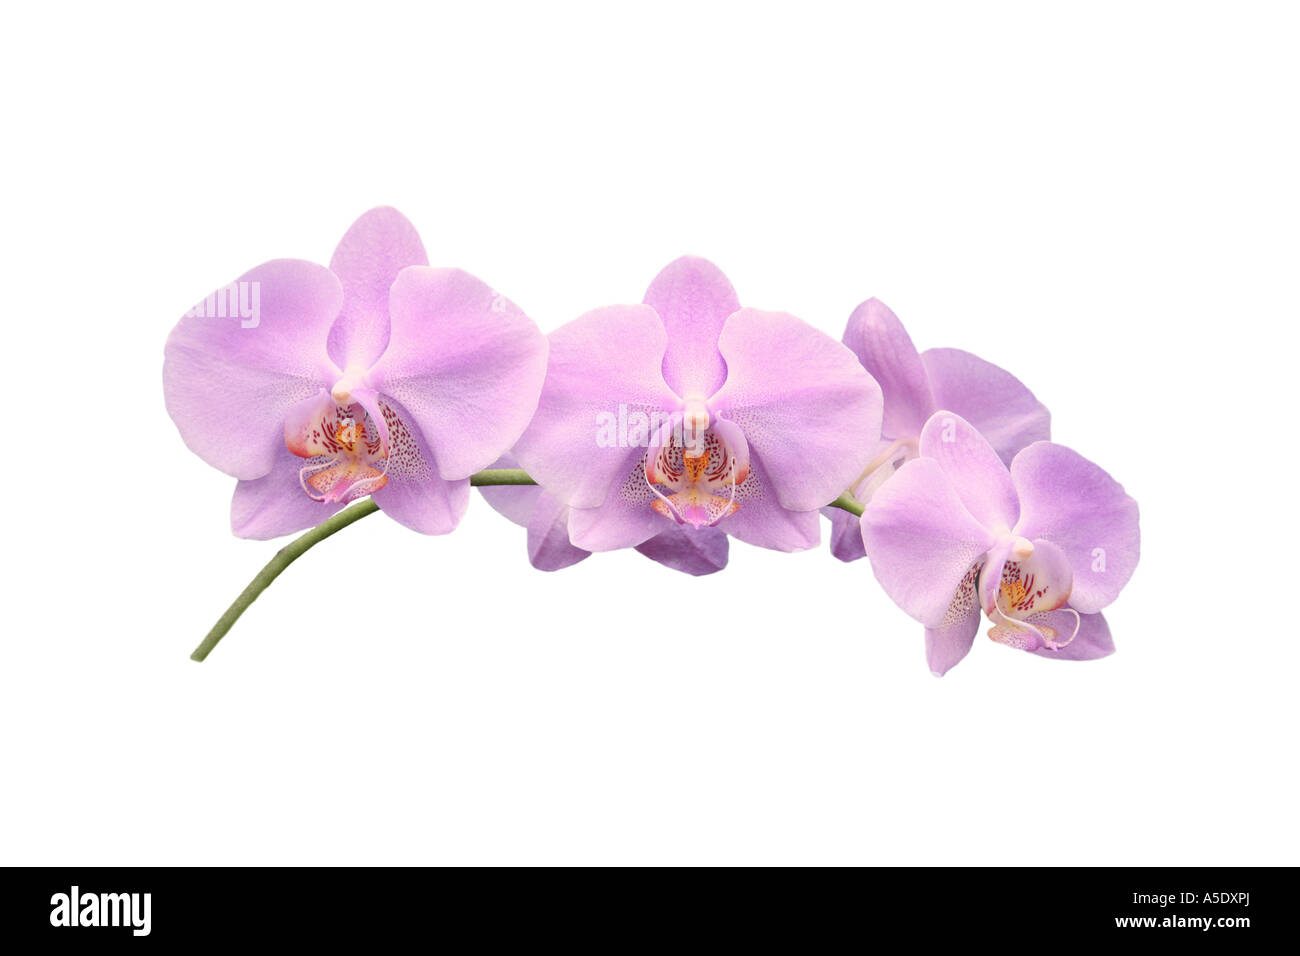 Moth orchid (Phalaenopsis ibrido), ordine di sviluppo dei Fiori, Foto serie 9/9 Foto Stock